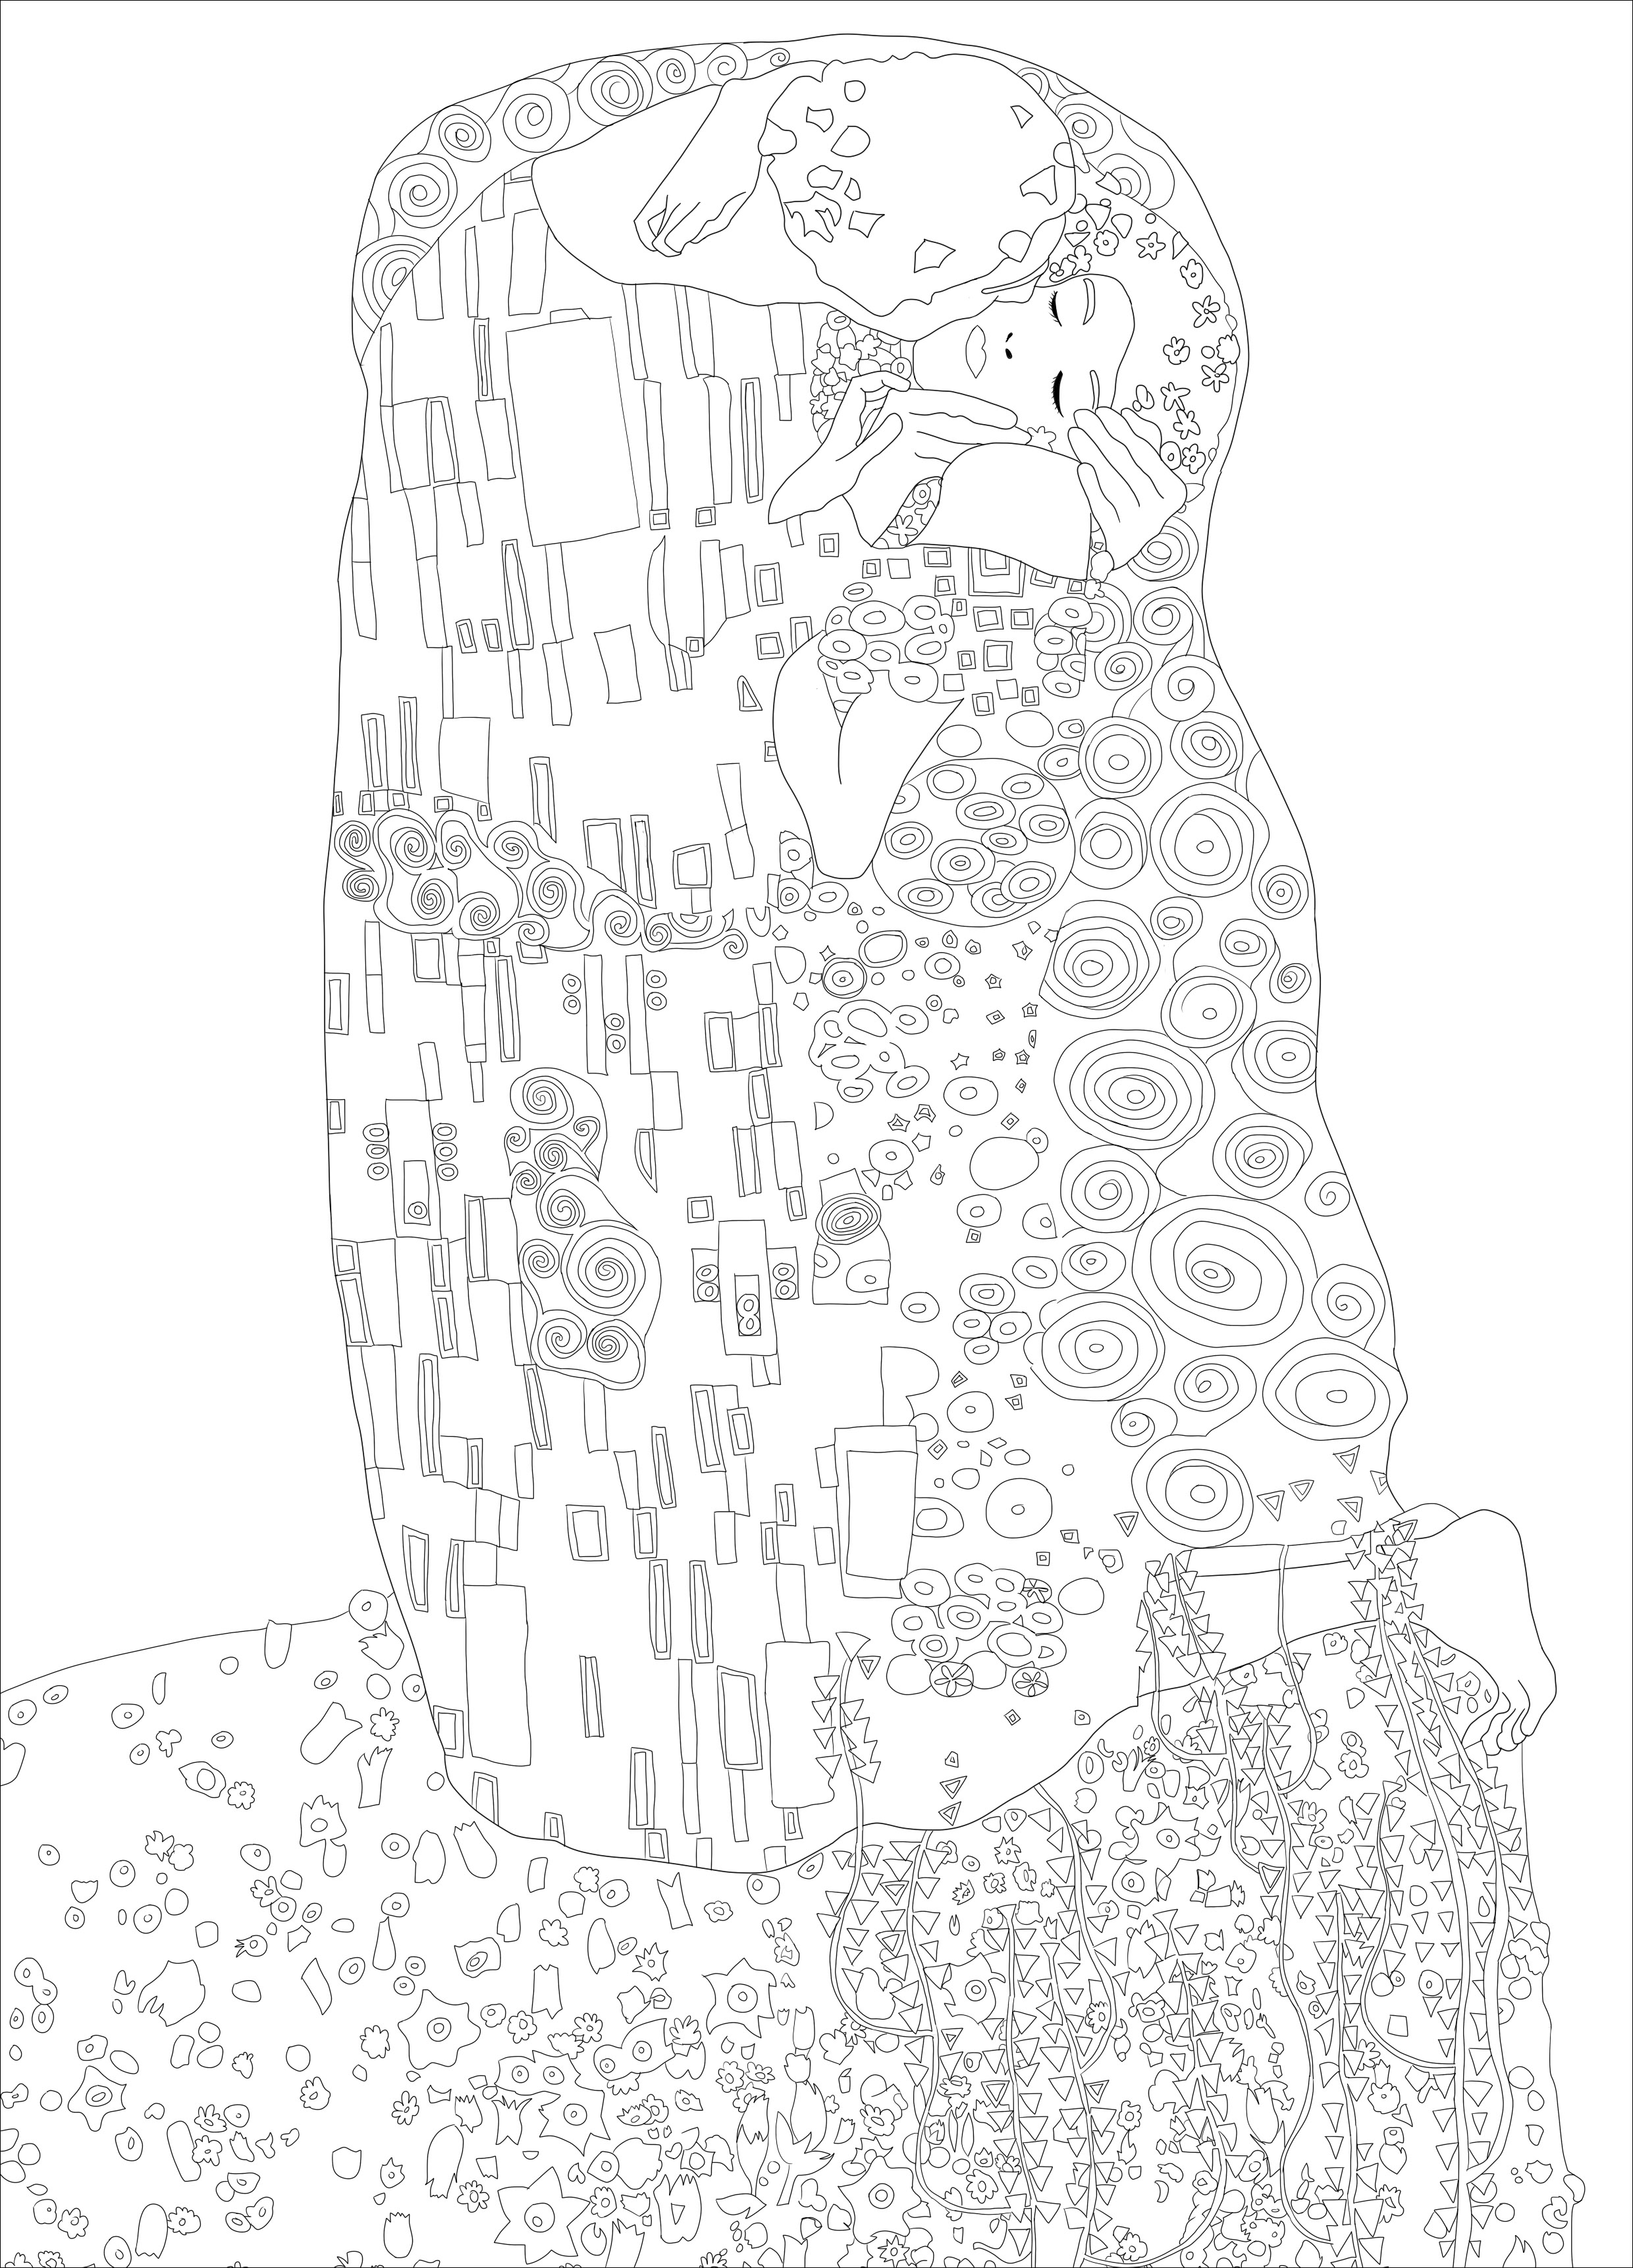 Página para colorir criada a partir do quadro 'O Beijo' de Gustav Klimt. O quadro é considerado uma obra-prima do movimento Art Nouveau e é uma das obras mais populares de Klimt. Encontra-se atualmente no museu Österreichische Galerie Belvedere, em Viena, Áustria. A pintura é conhecida pelo seu carácter sensual e erótico e pela utilização de folha de ouro e outros elementos decorativos na composição.